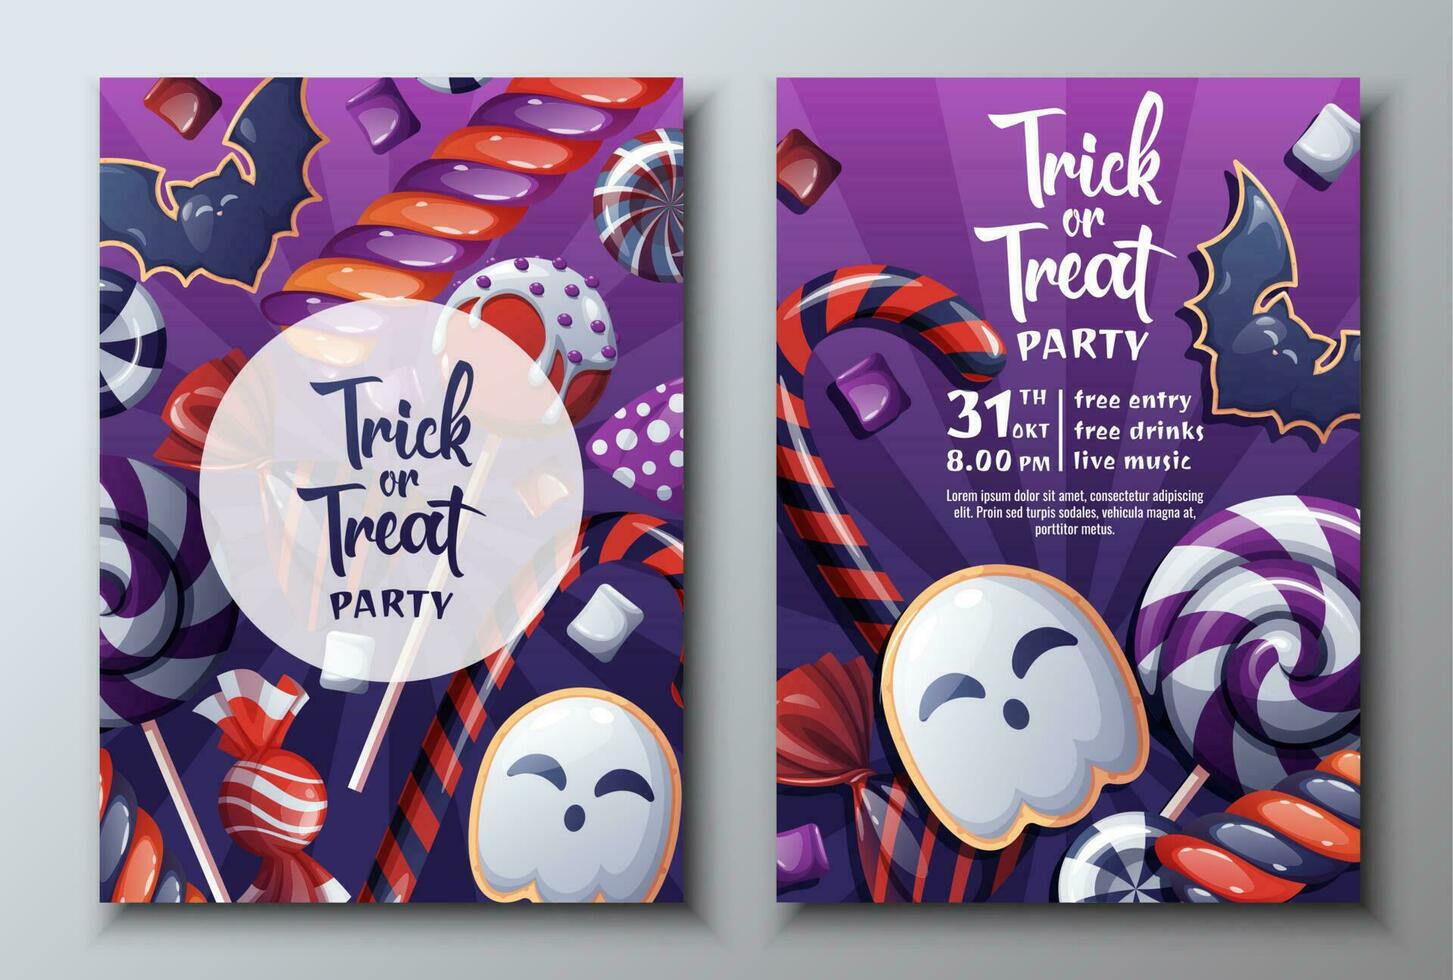 Vektor einstellen von Halloween Party Einladungen oder Gruß Karten mit Süßigkeiten, lollipops.ghost und Schläger Kekse.